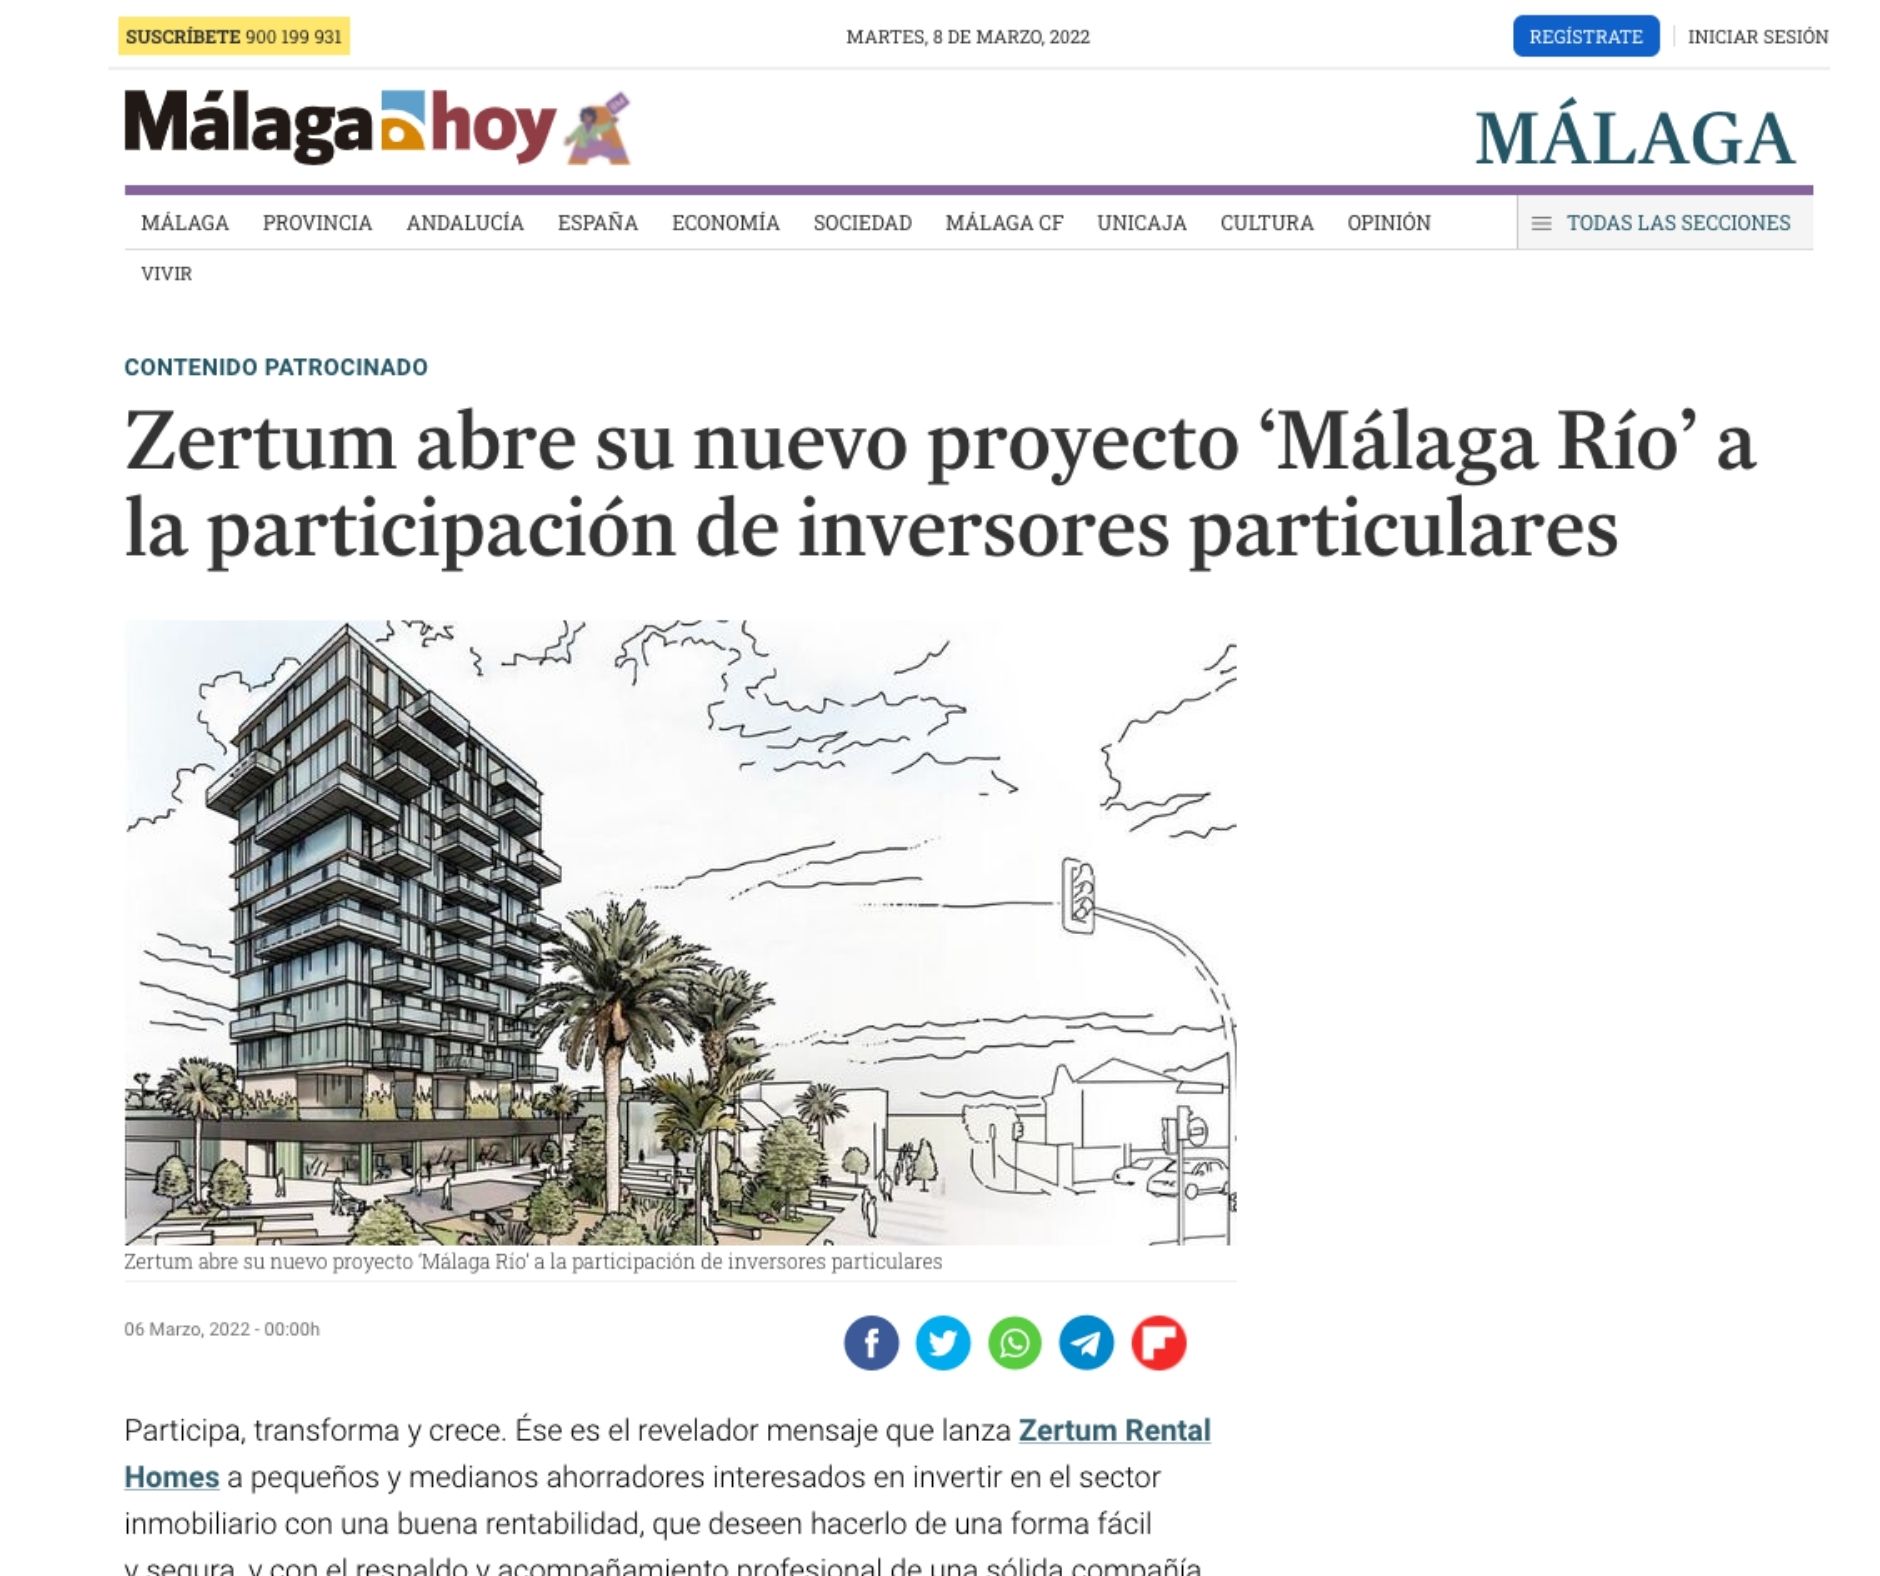 Zertum abre su nuevo proyecto ‘Málaga Río’ a la participación de inversores particulares